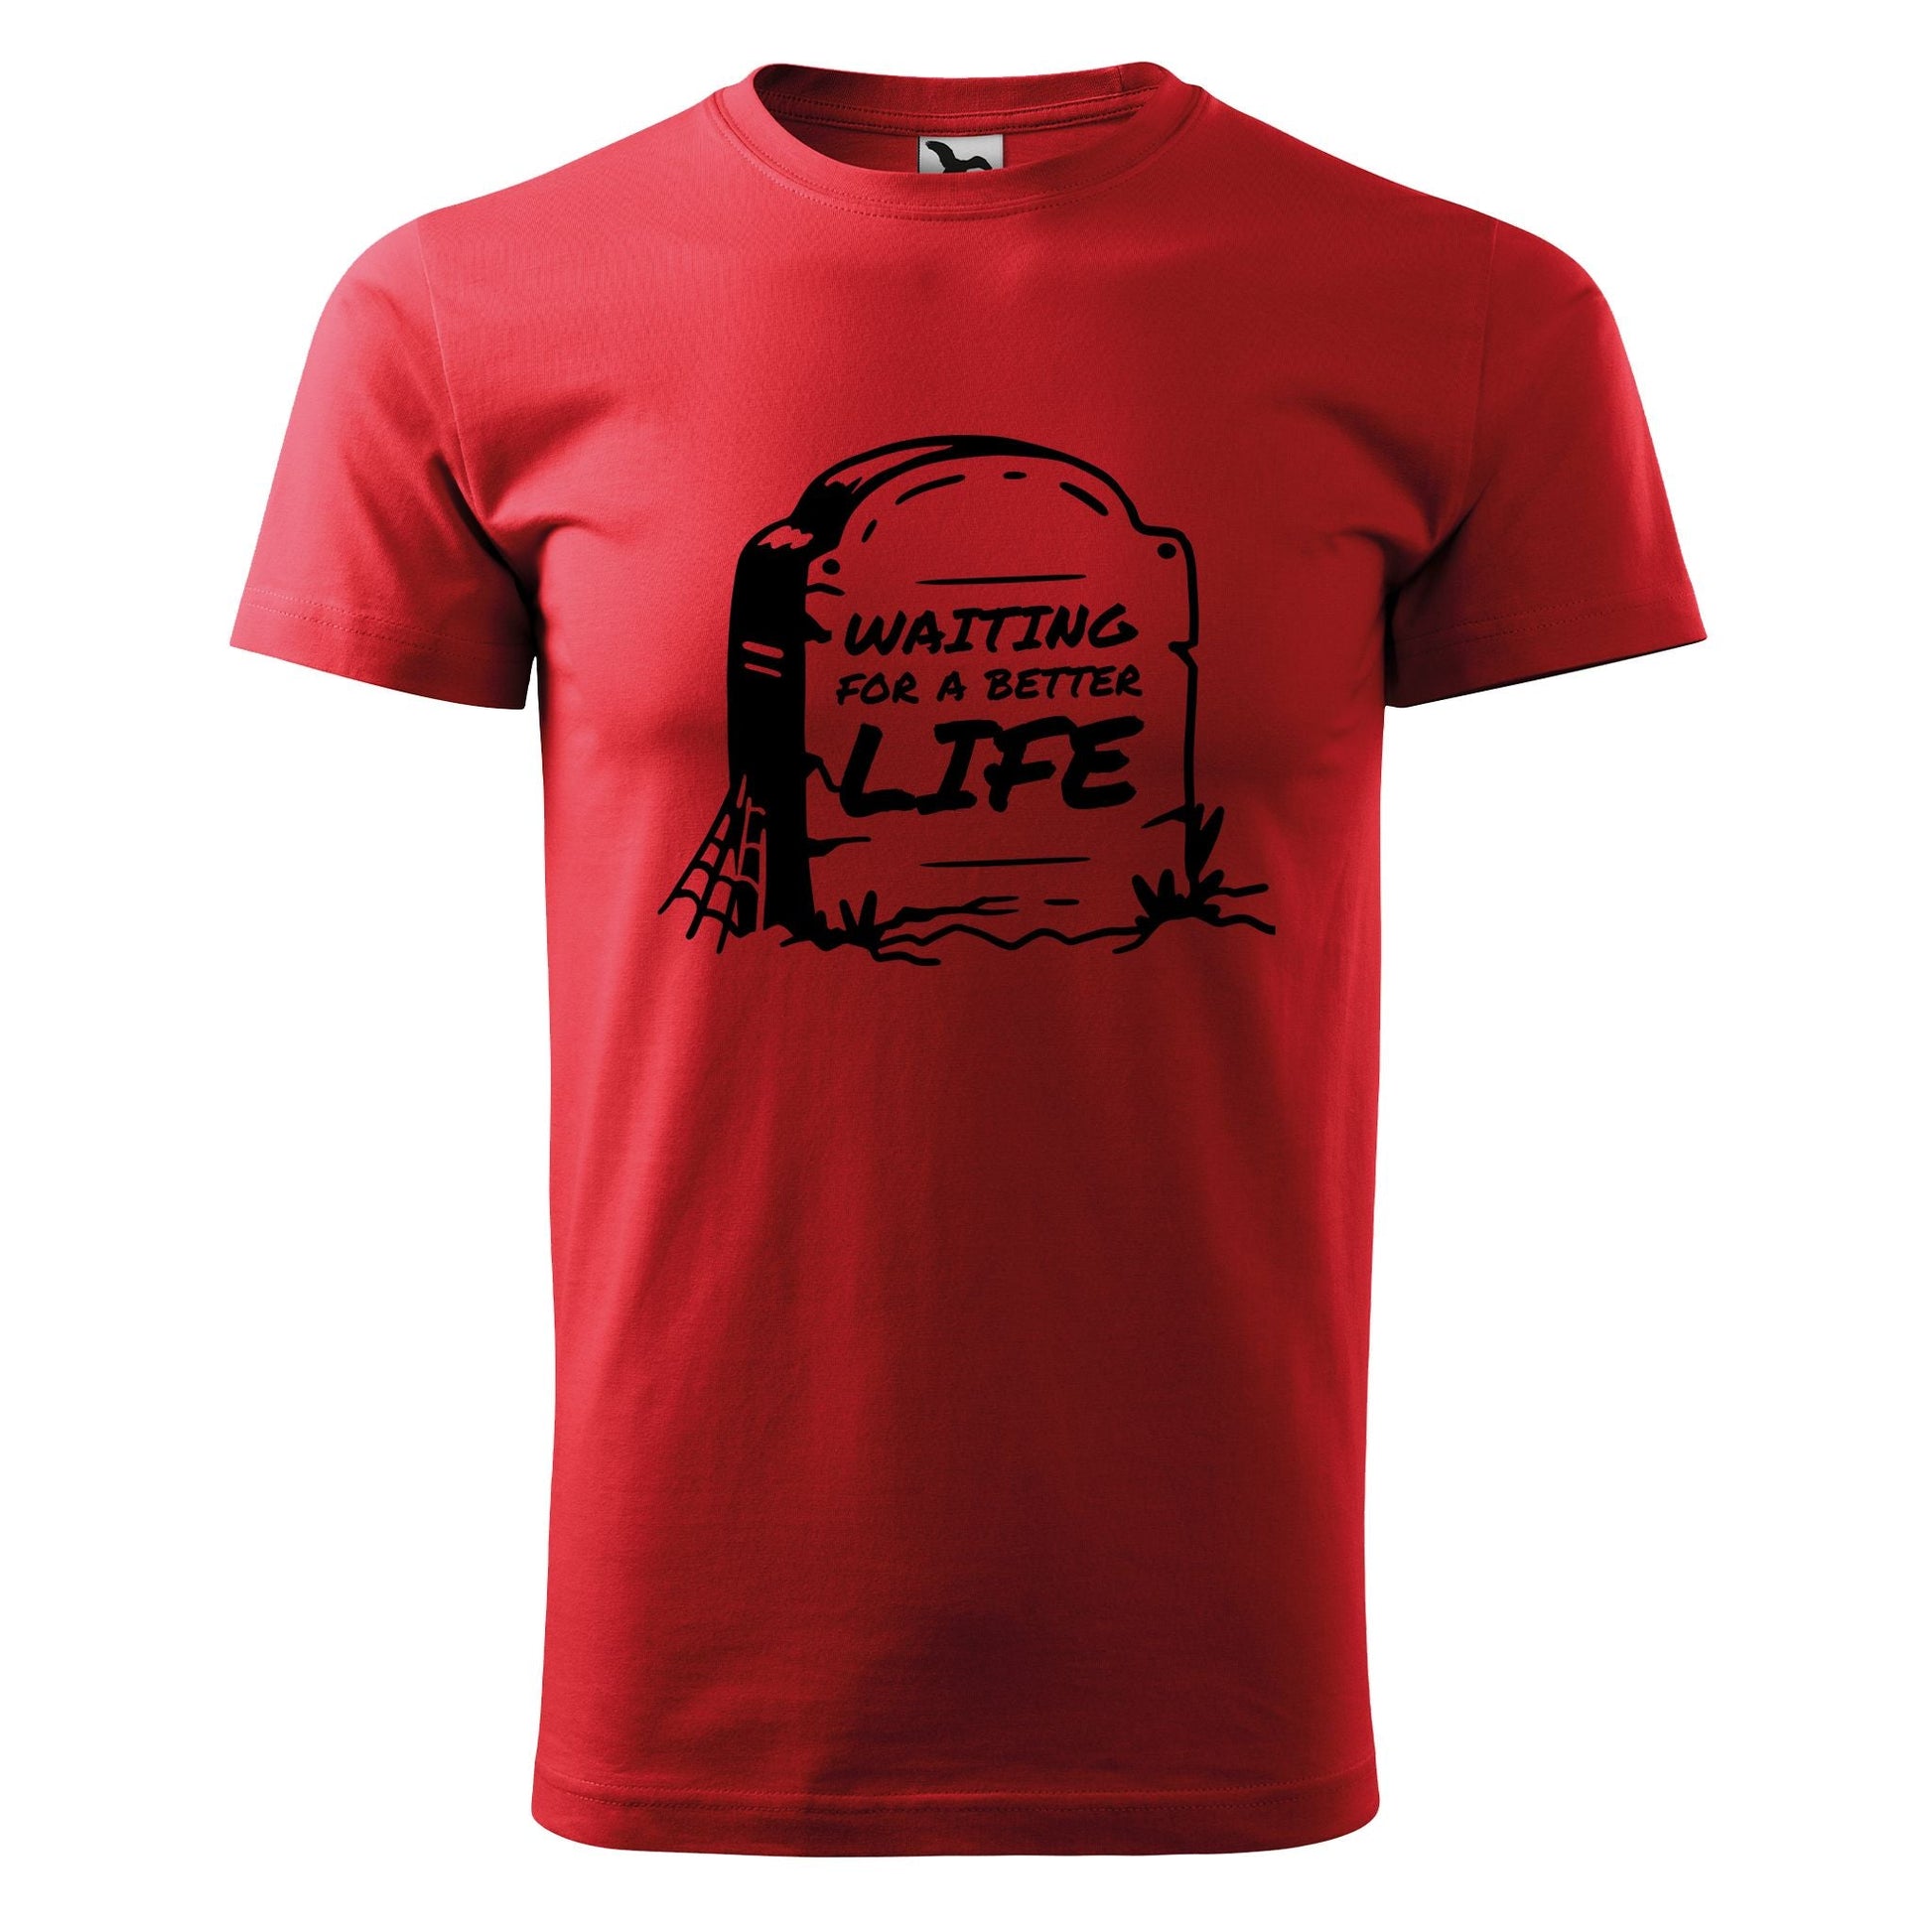 Waiting for a better life t-shirt - rvdesignprint